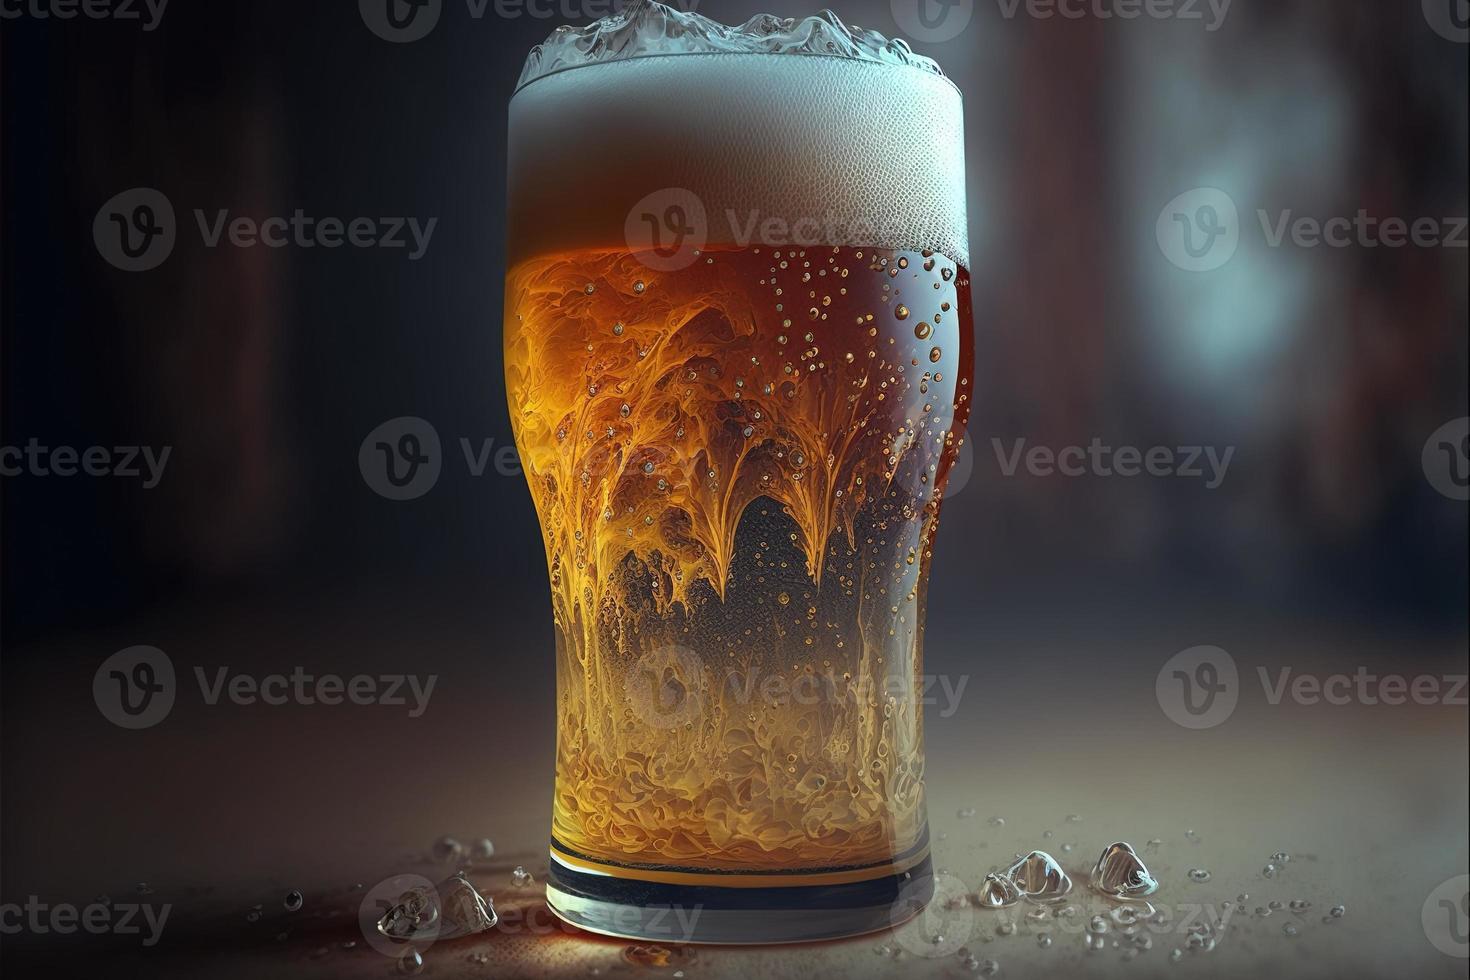 kall glas fylld med öl foto